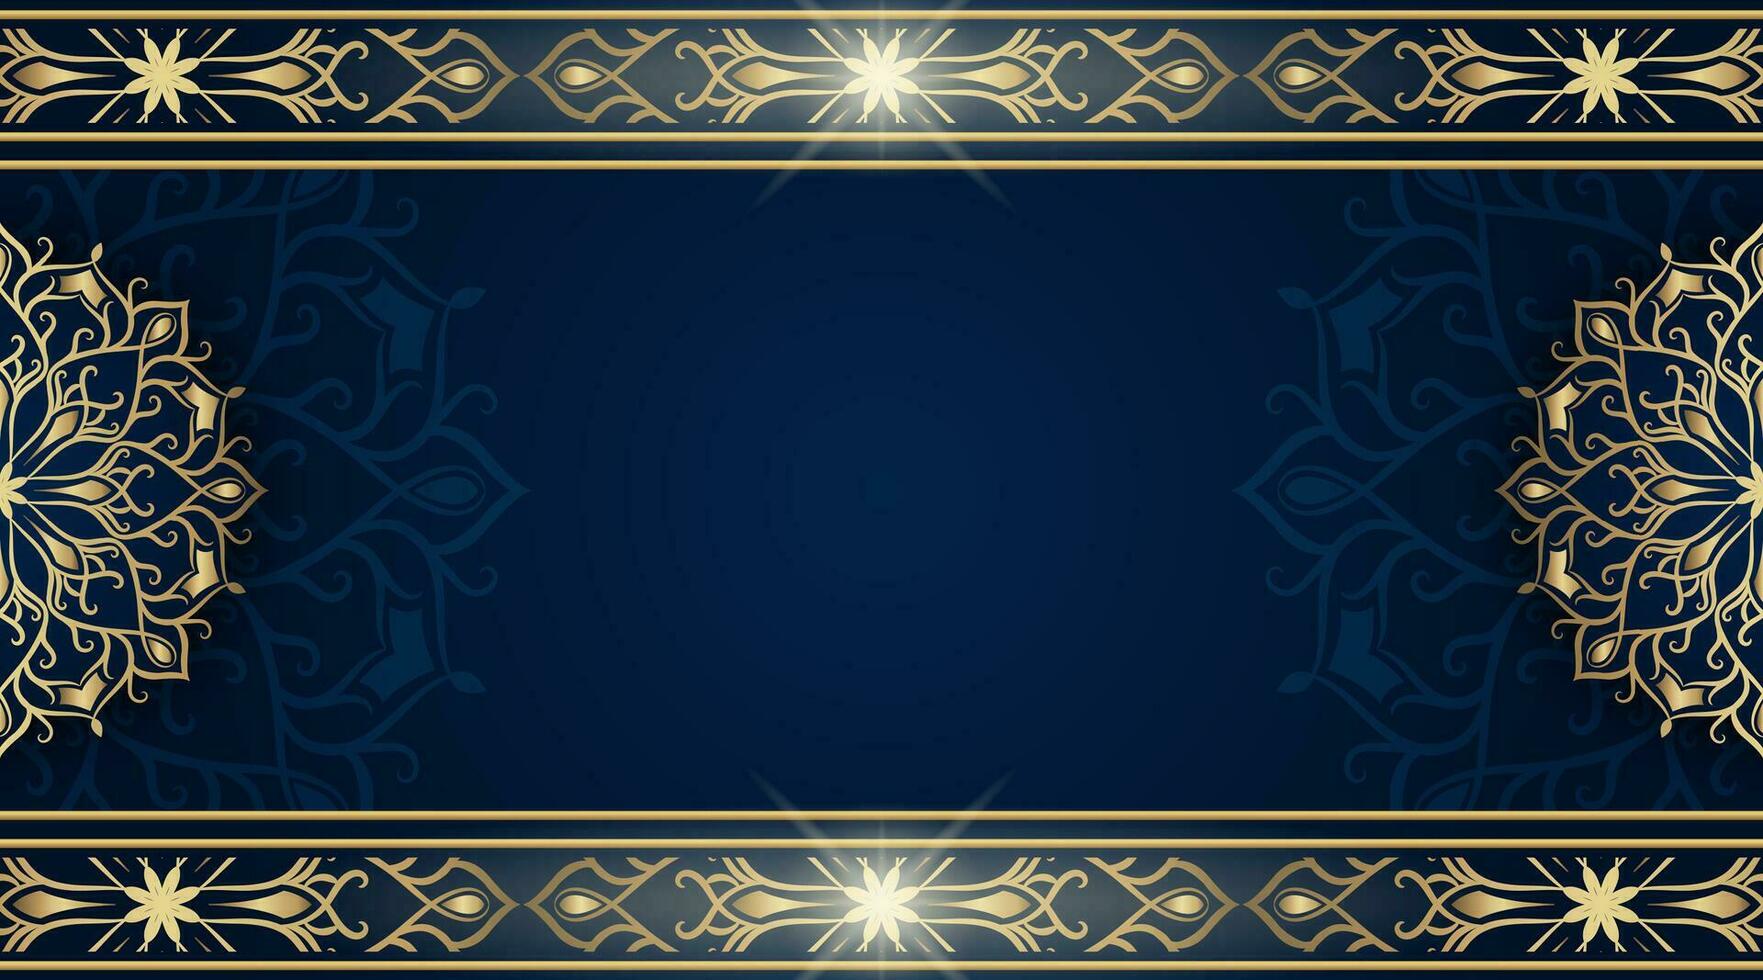 fundo azul com ornamento de mandala dourada vetor